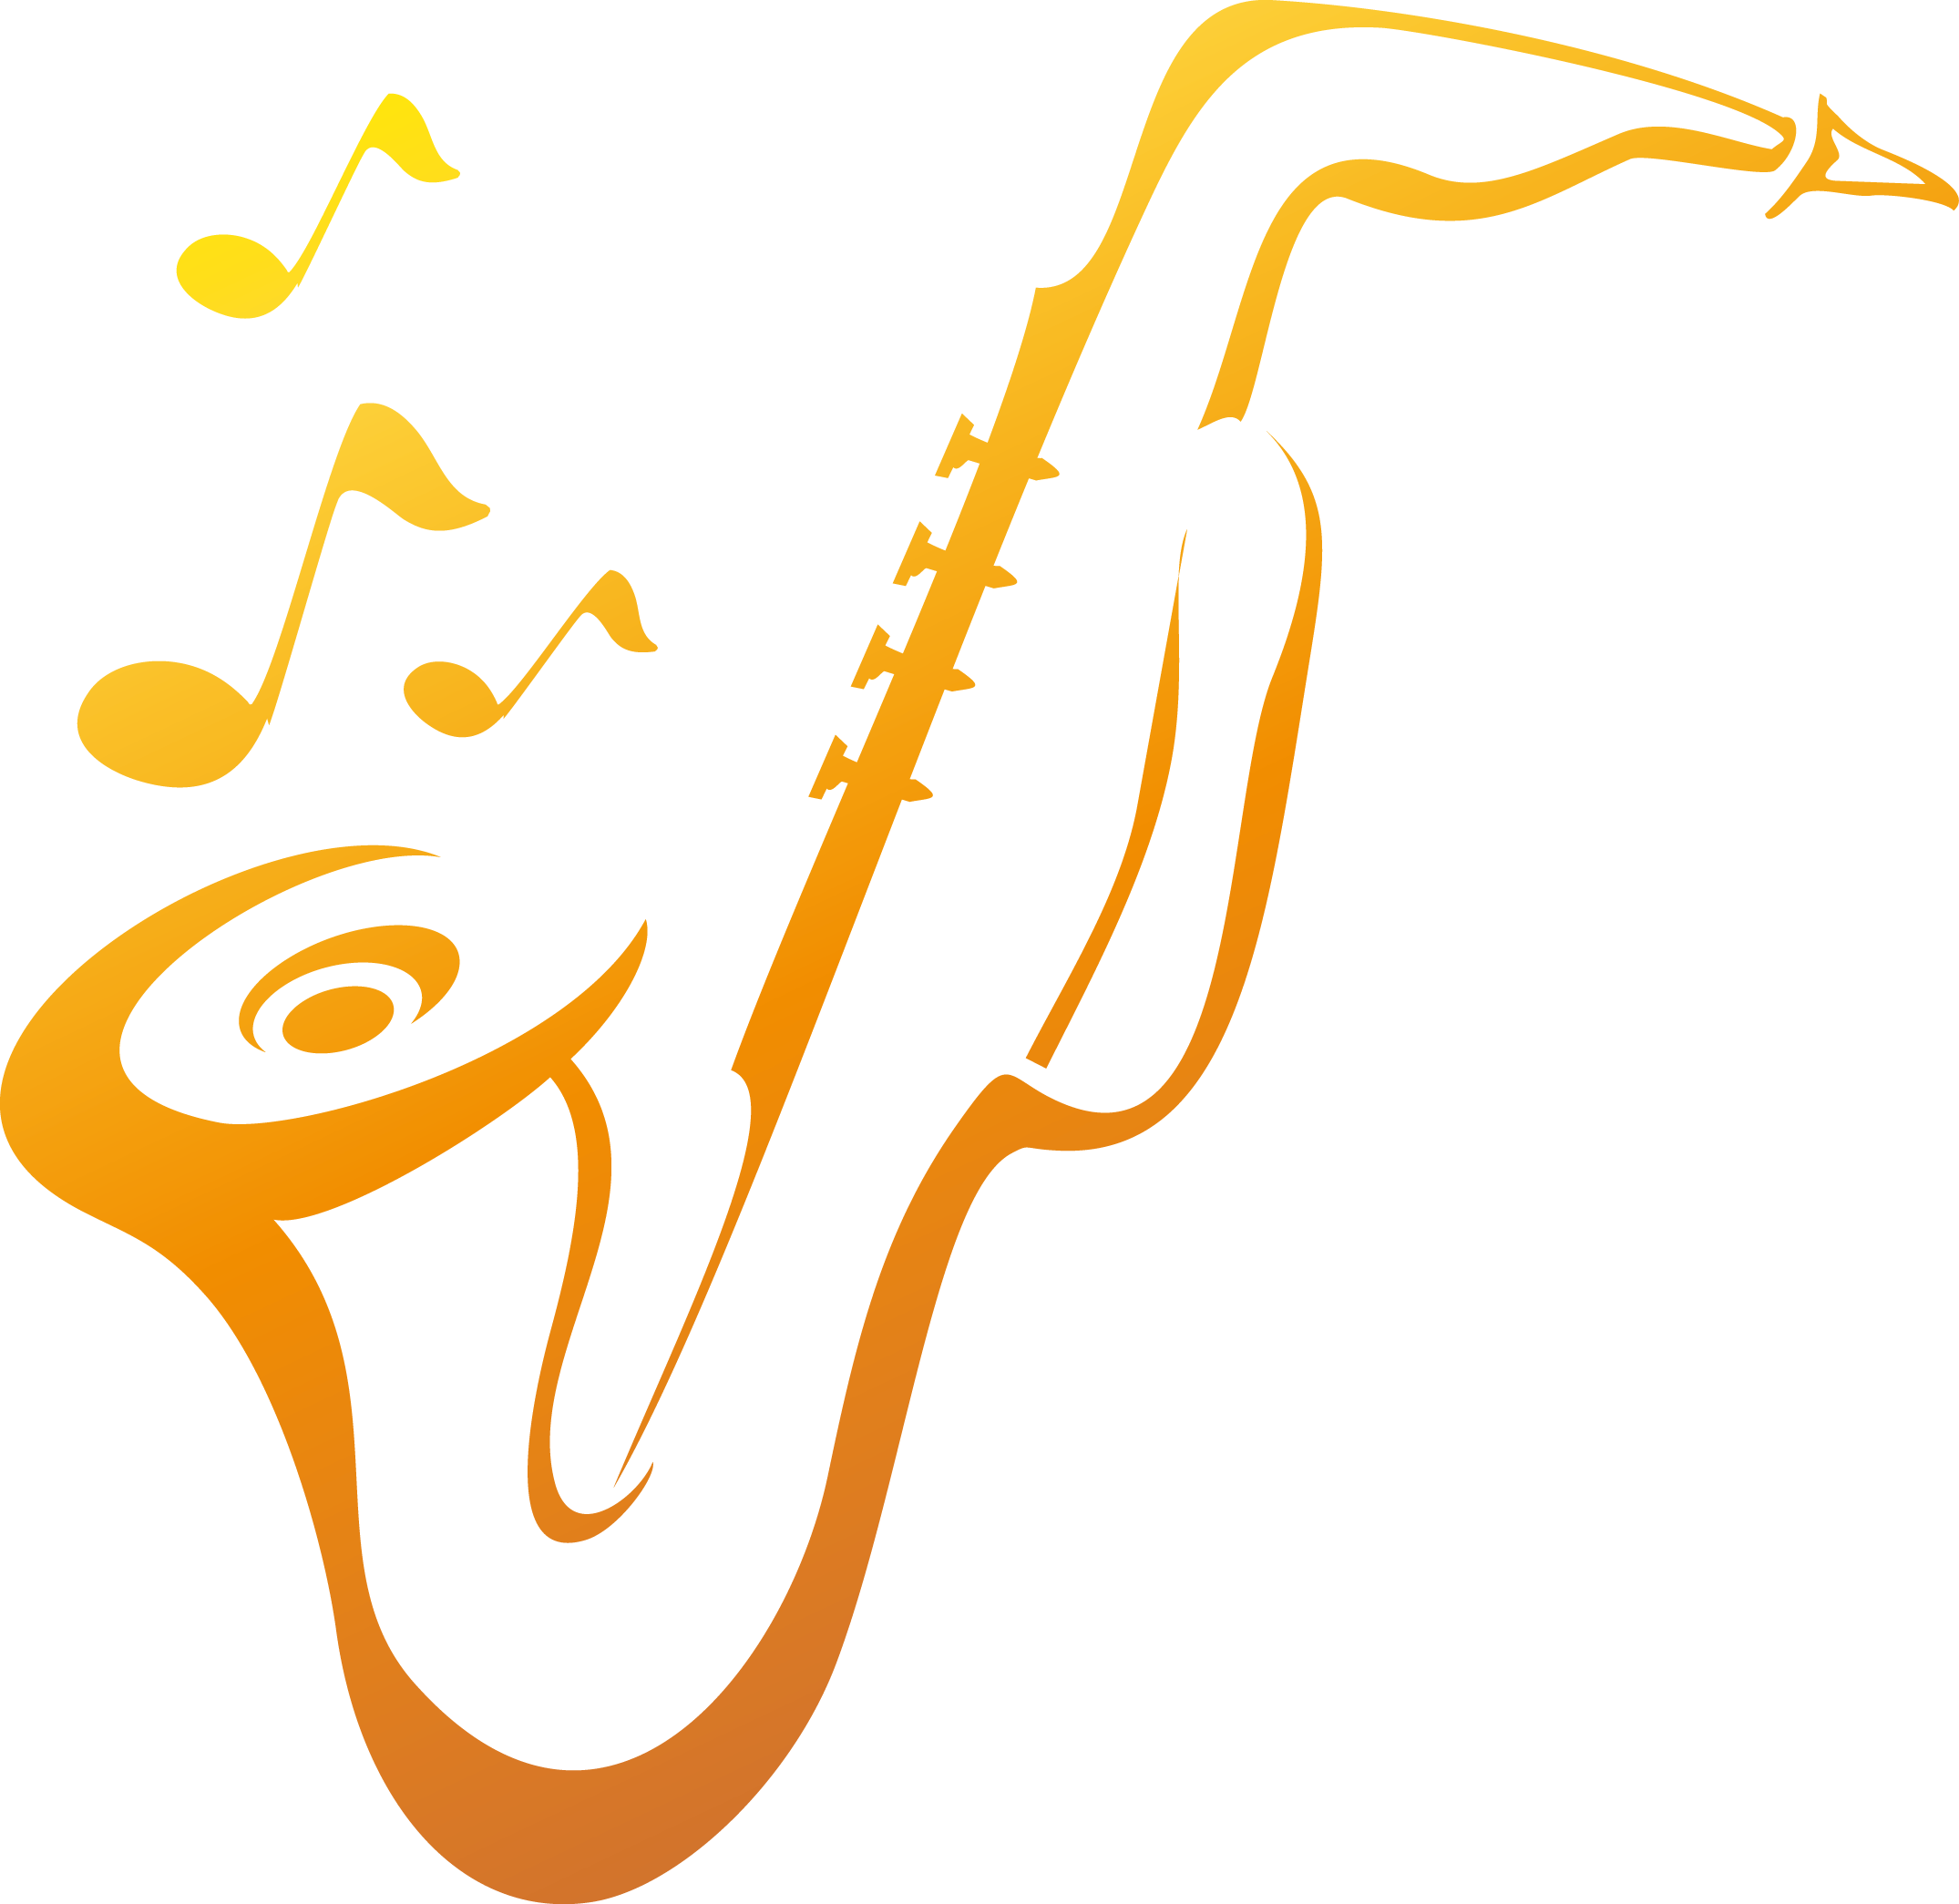 Logo Saxophone Royalty-free Music - Saxophone Logo (2150x2090)